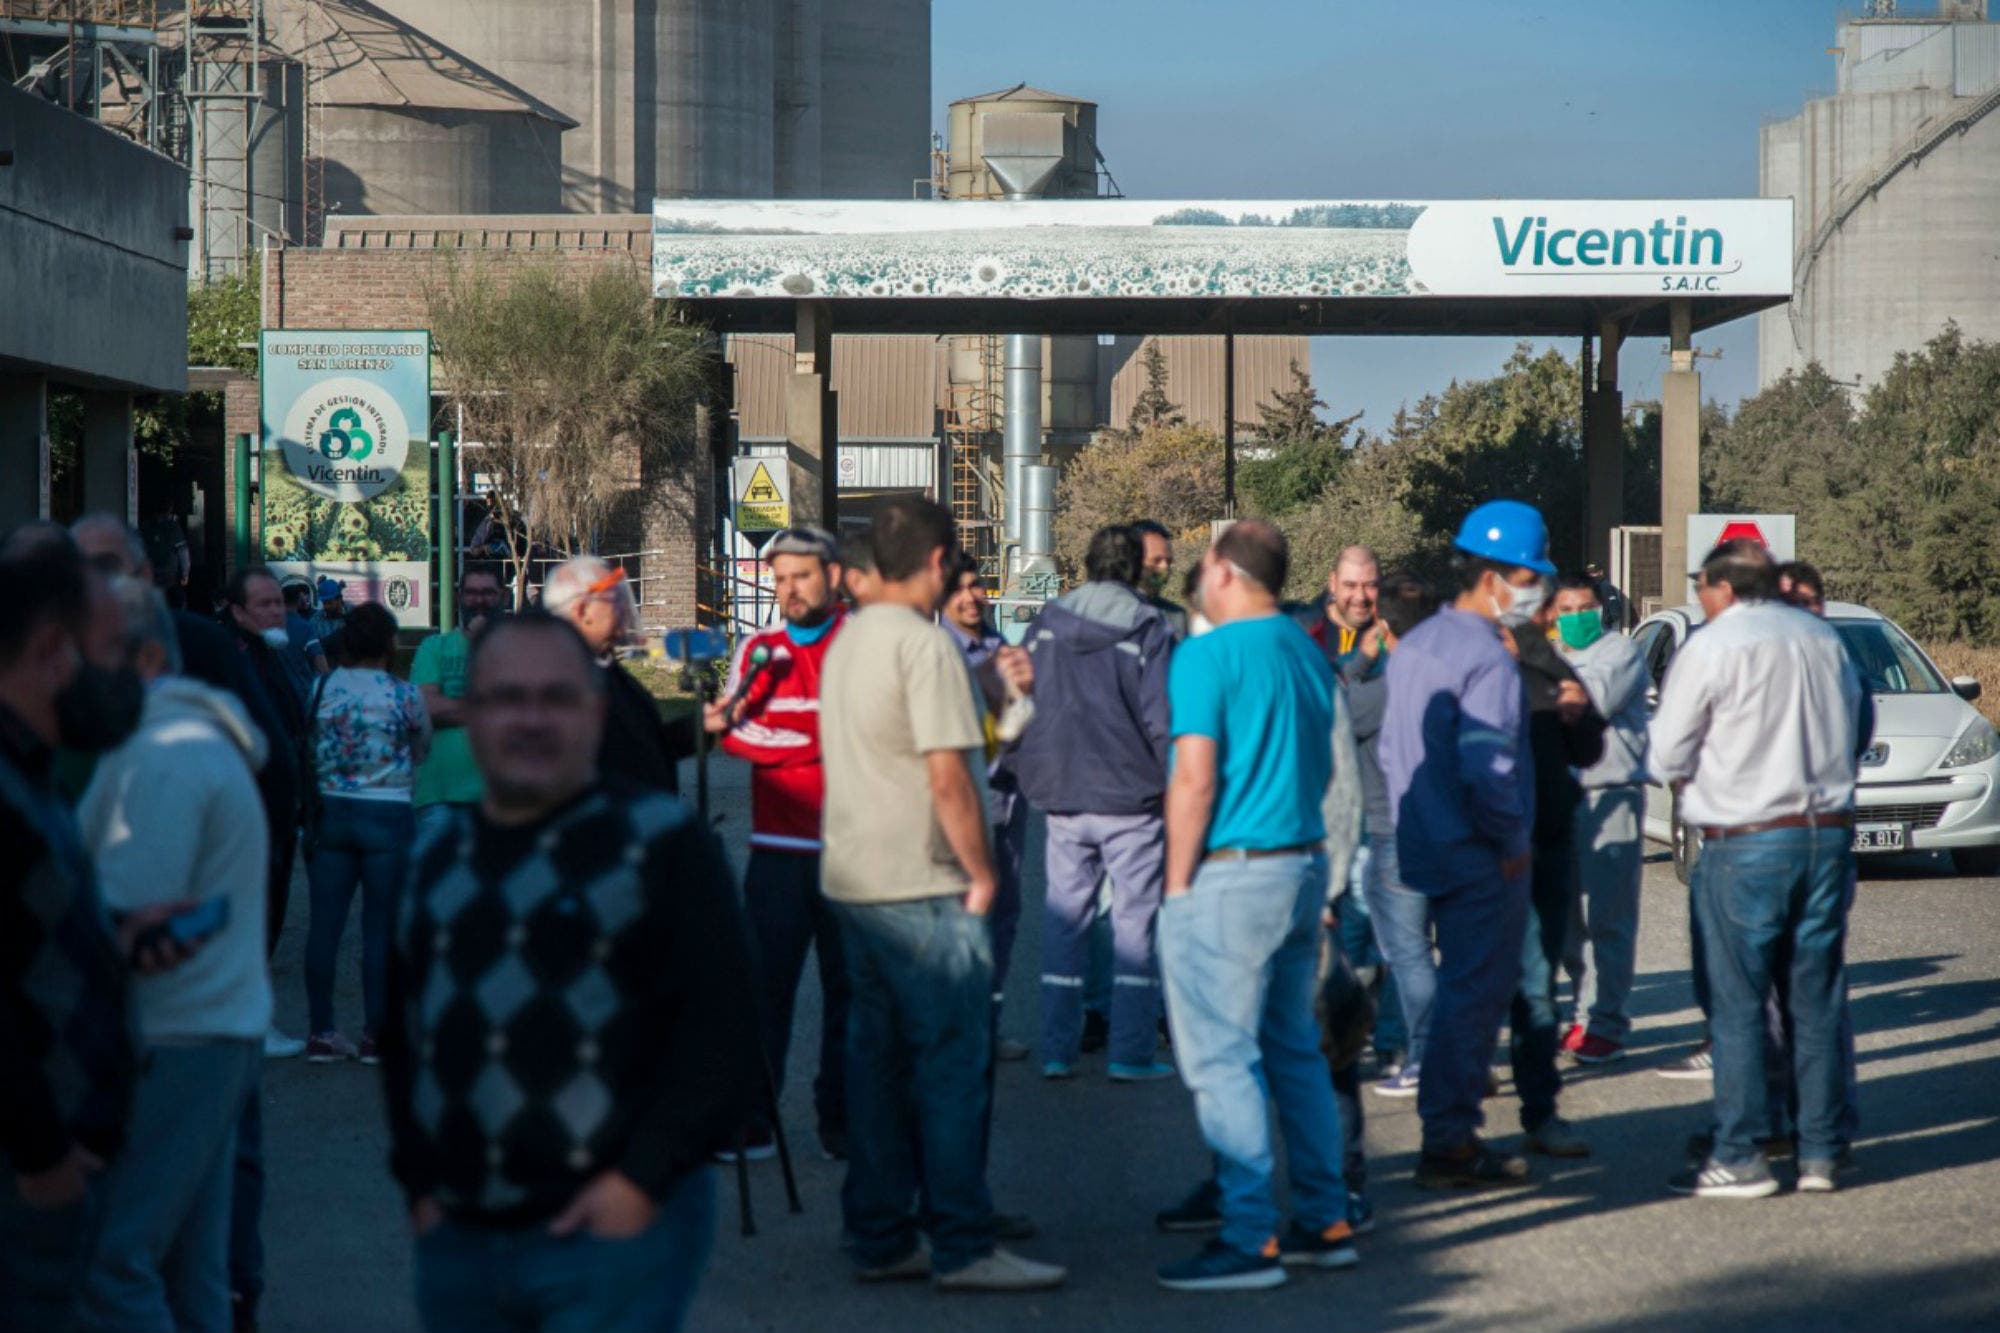 Las organizaciones gremiales aceiteras en conjunto piden la intervención para evitar el vaciamiento de Vicentin